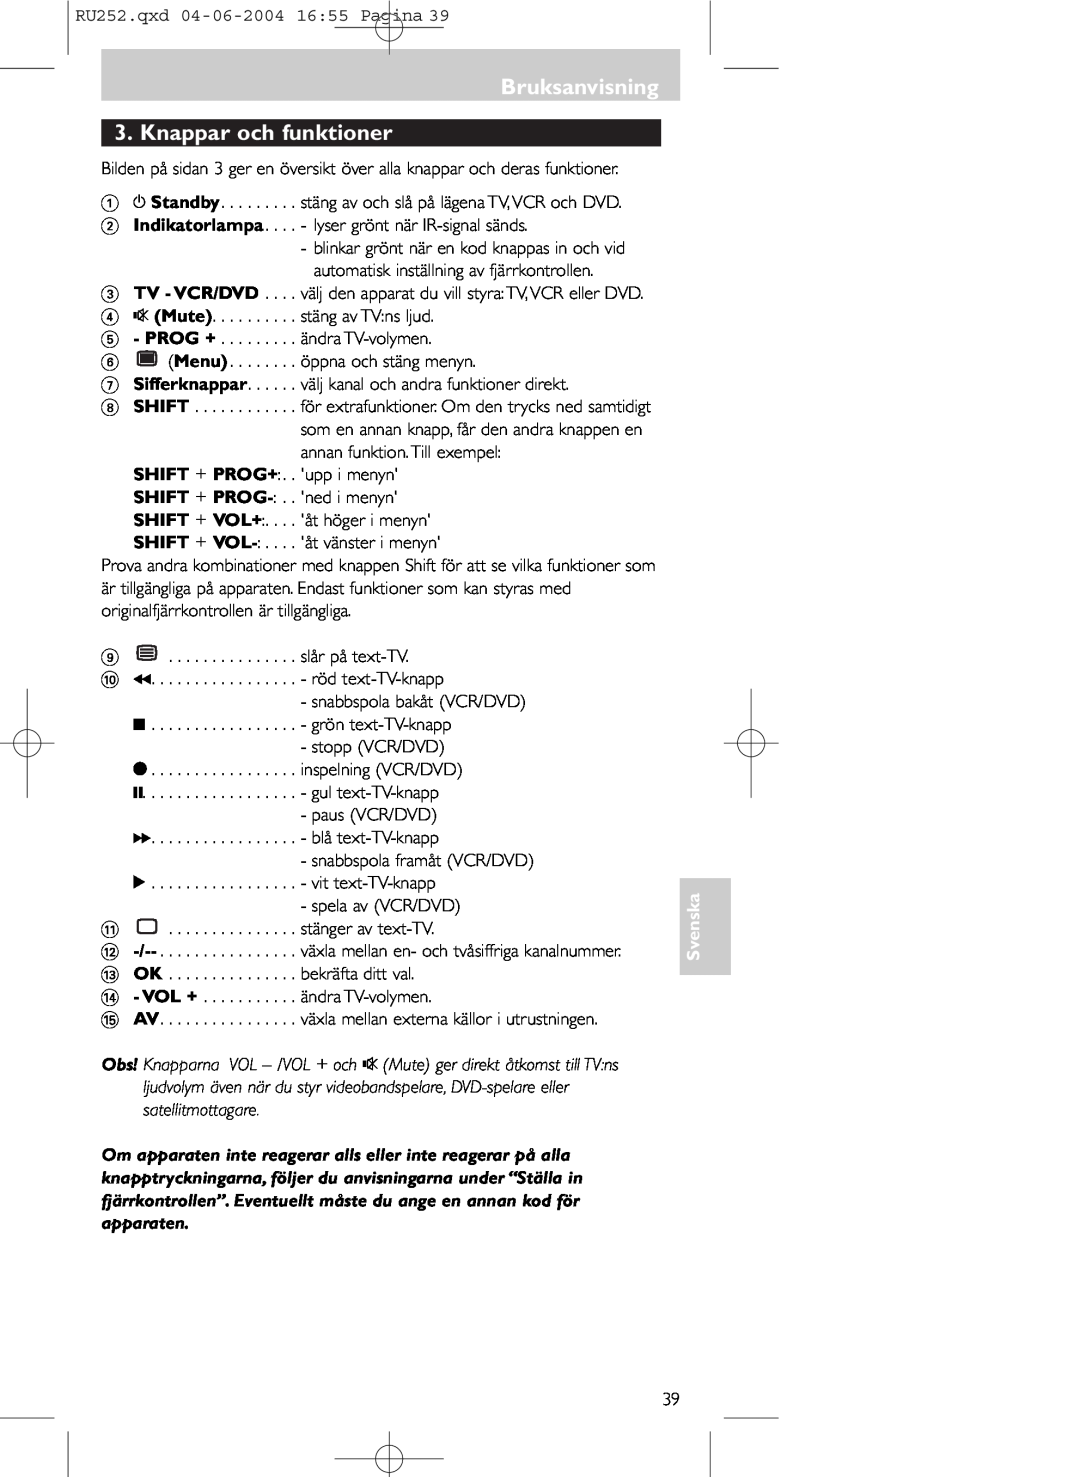 Philips SBC RU 252 manual Bruksanvisning 3. Knappar och funktioner, Svenska 